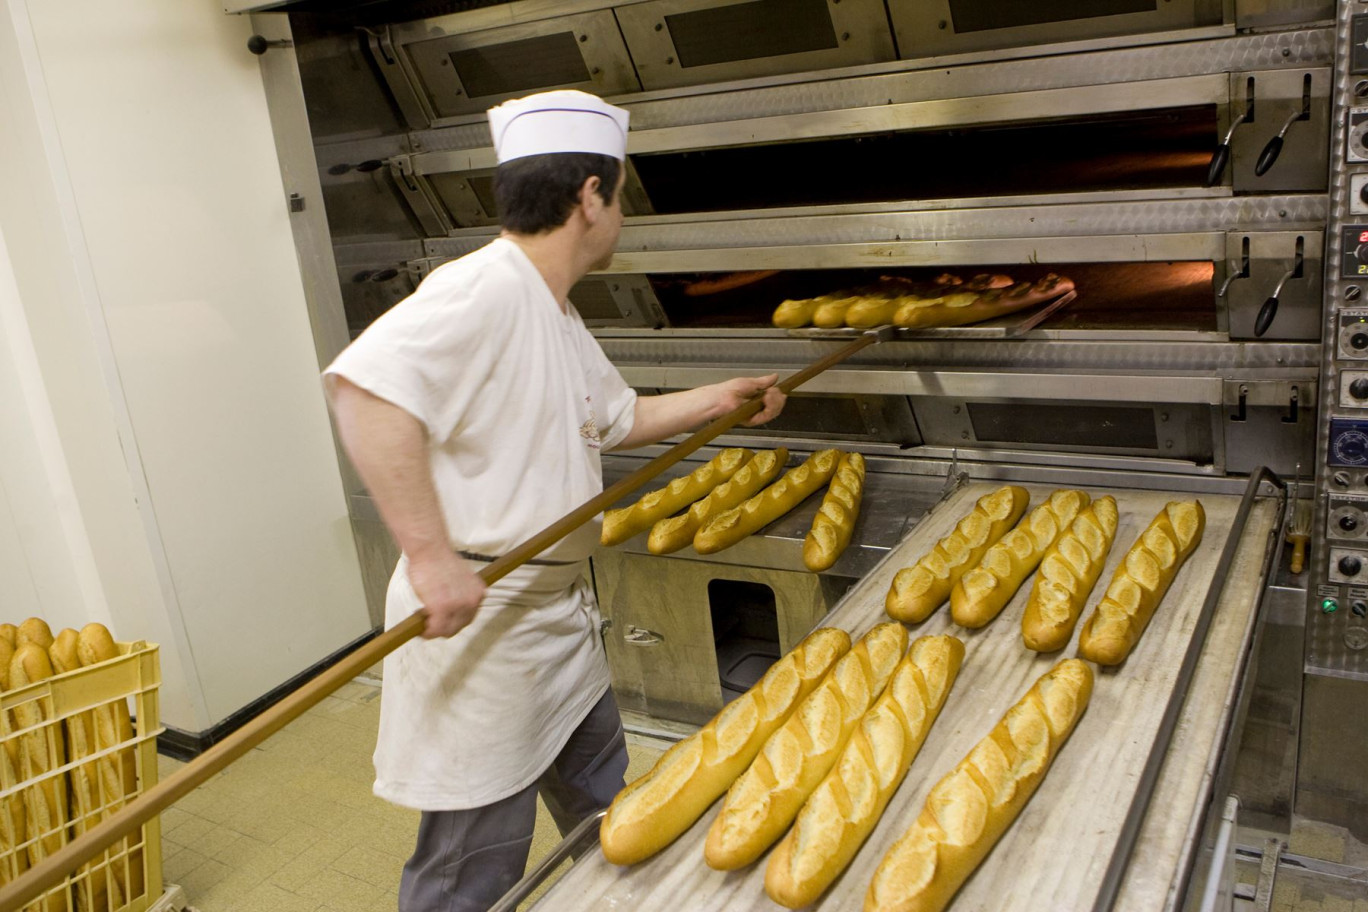 Le ministre de l’Economie a annoncé que les professionnels du pain pourraient résilier sans frais leur contrat de fourniture d'énergie, en cas de hausse de prix «prohibitives», si cette dernière menace la survie de l’entreprise. © sebastien rabany